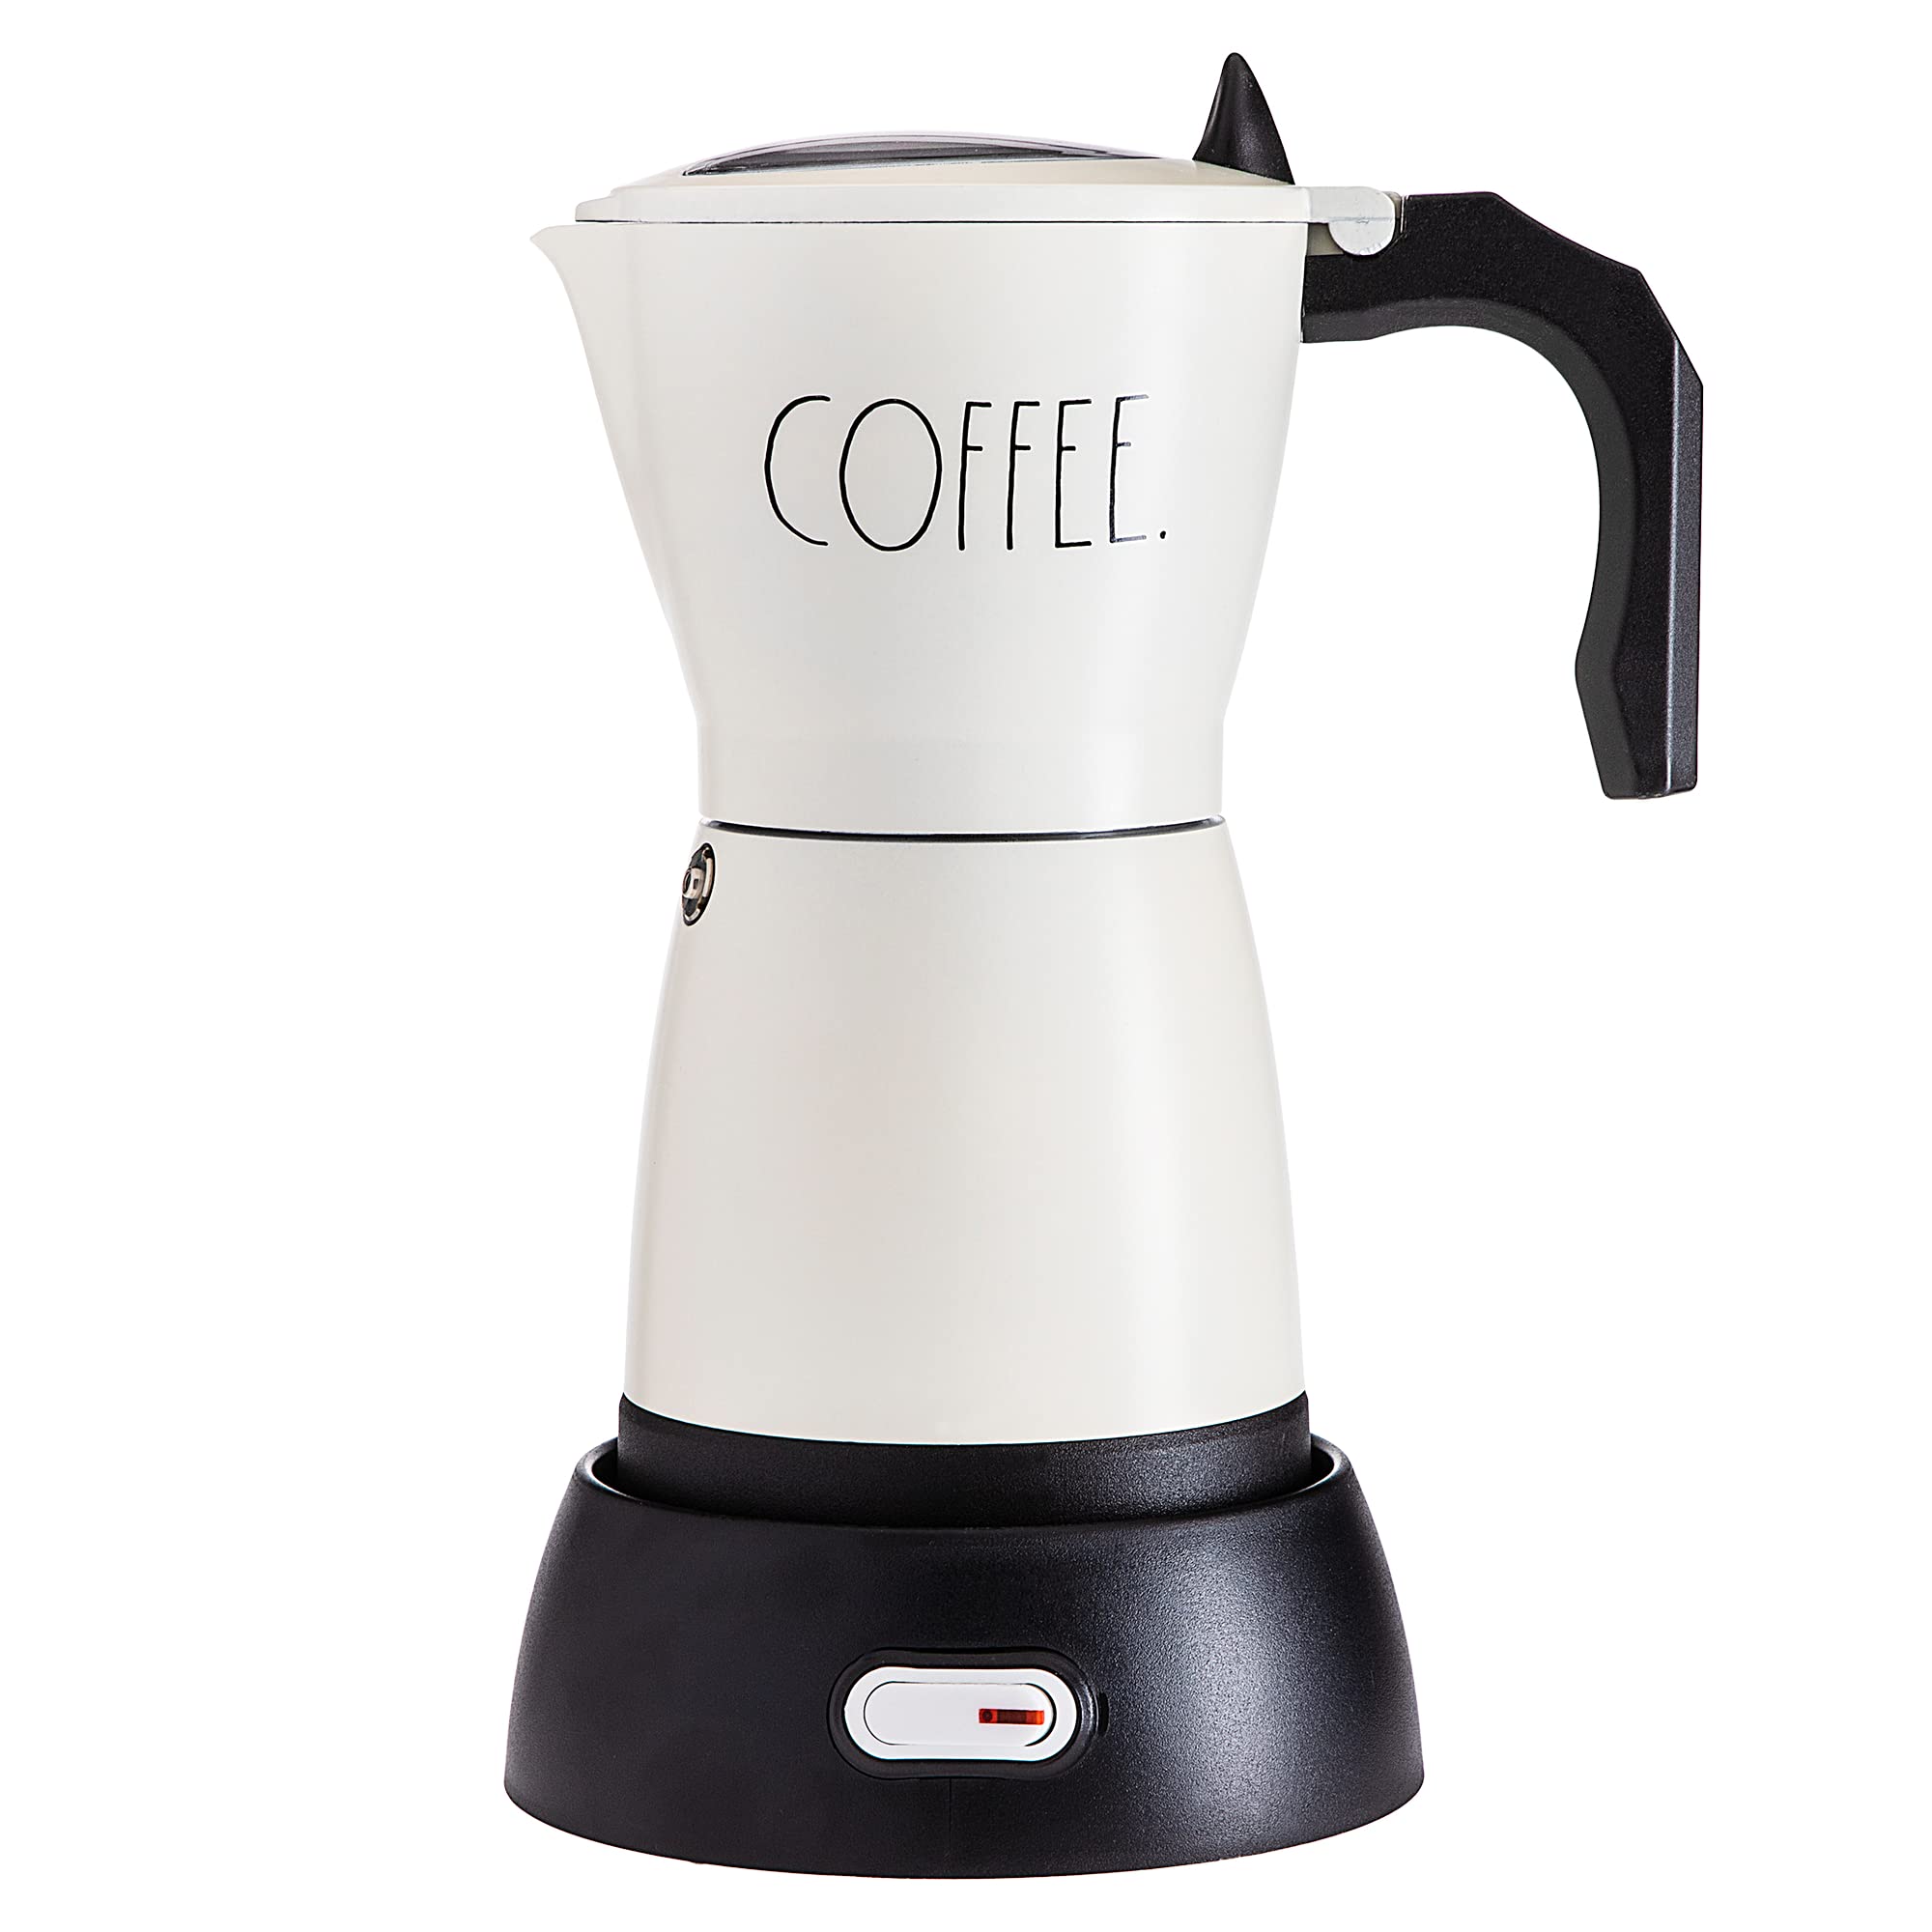 300 ml Espresso Maker for Full Bodied Coffee